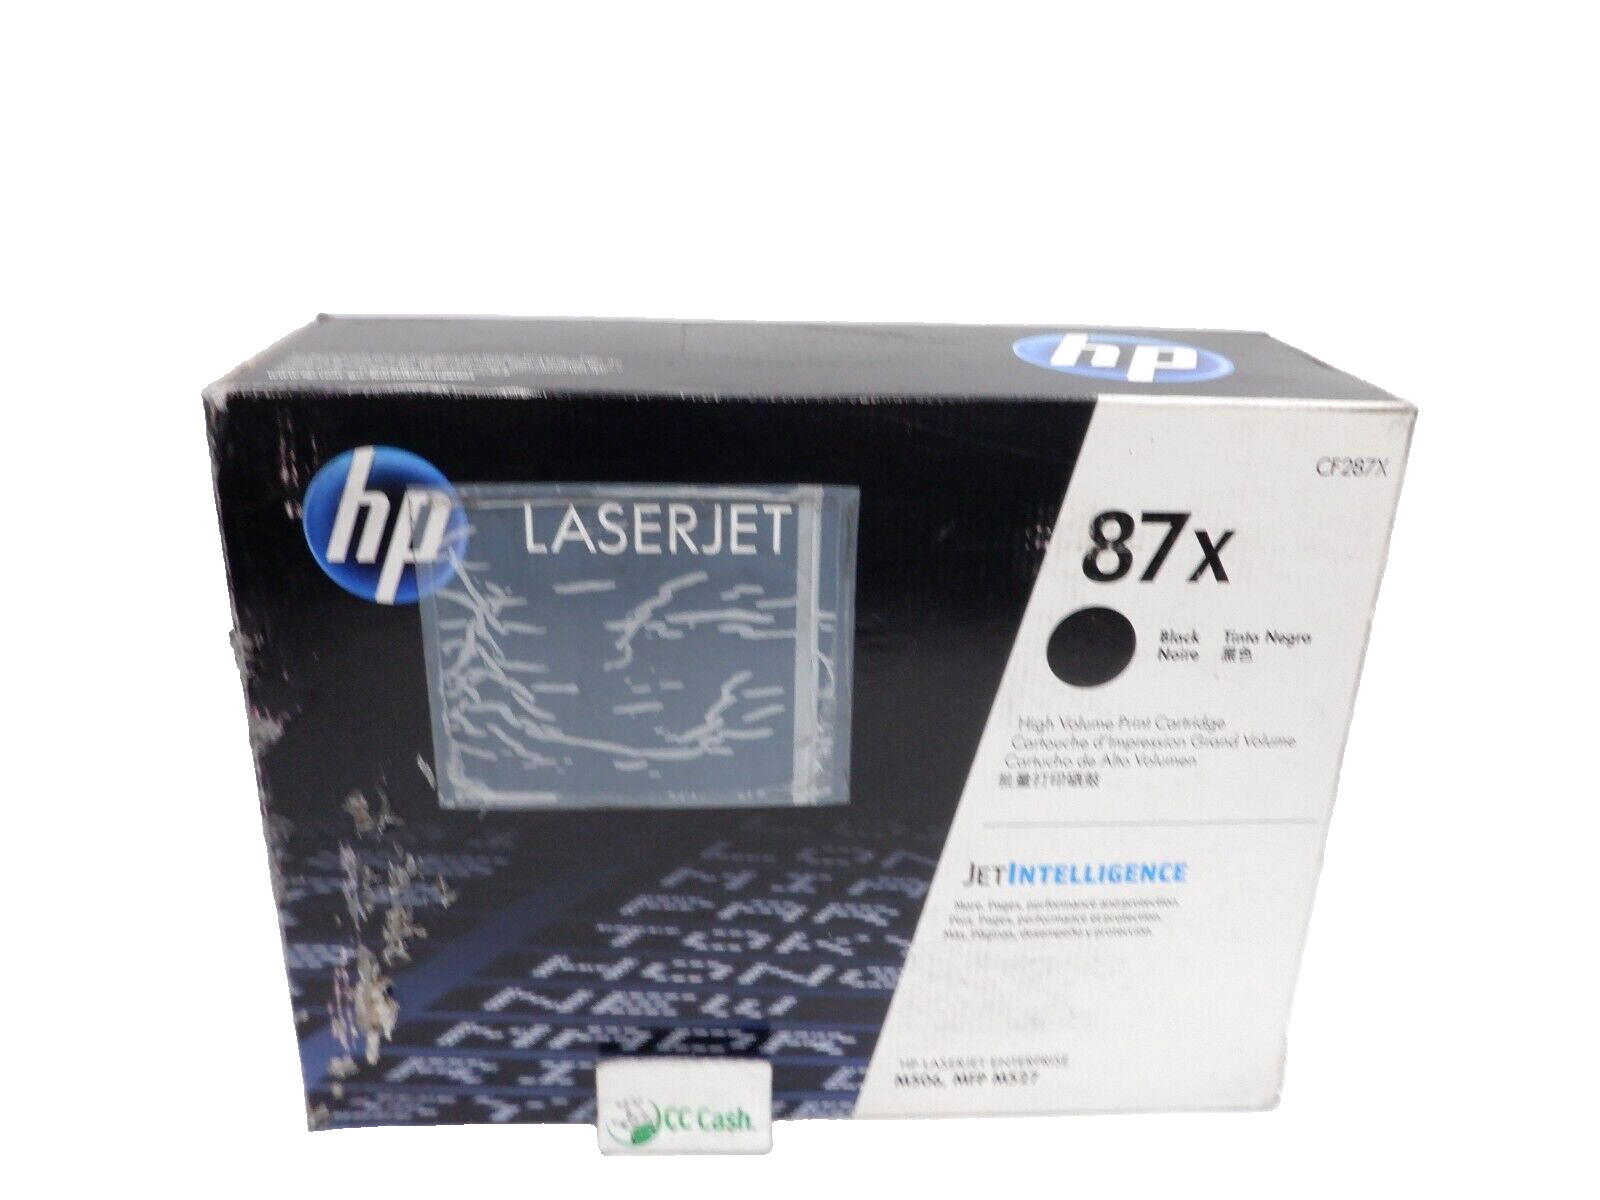 Genuine HP 87X Black CF287X High Volume Print Cartridge  D